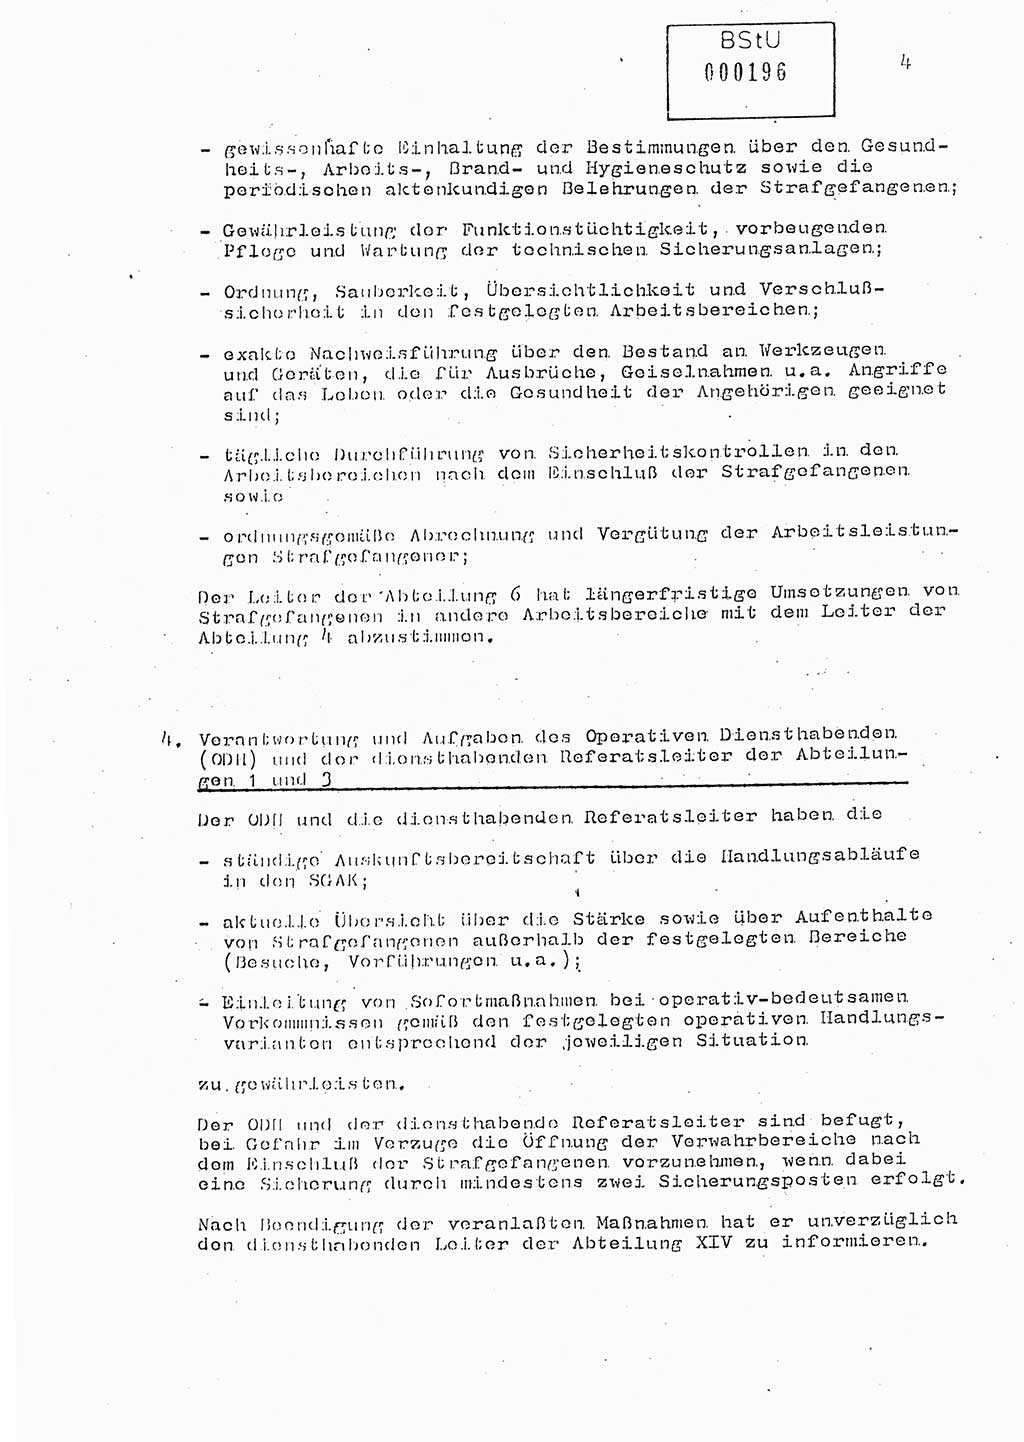 Anweisung Nr. 1/89 zur Gewährleistung der Sicherheit und Ordnung in den Strafgefangenenarbeitskommandos (SGAK) der Abteilung ⅩⅣ des MfS Berlin, Ministerium für Staatssicherheit (MfS) [Deutsche Demokratische Republik (DDR)], Abteilung (Abt.) ⅩⅣ, Berlin 1989, Seite 4 (Anw. 1/89 MfS DDR Abt. ⅩⅣ 1/89 1989, S. 4)